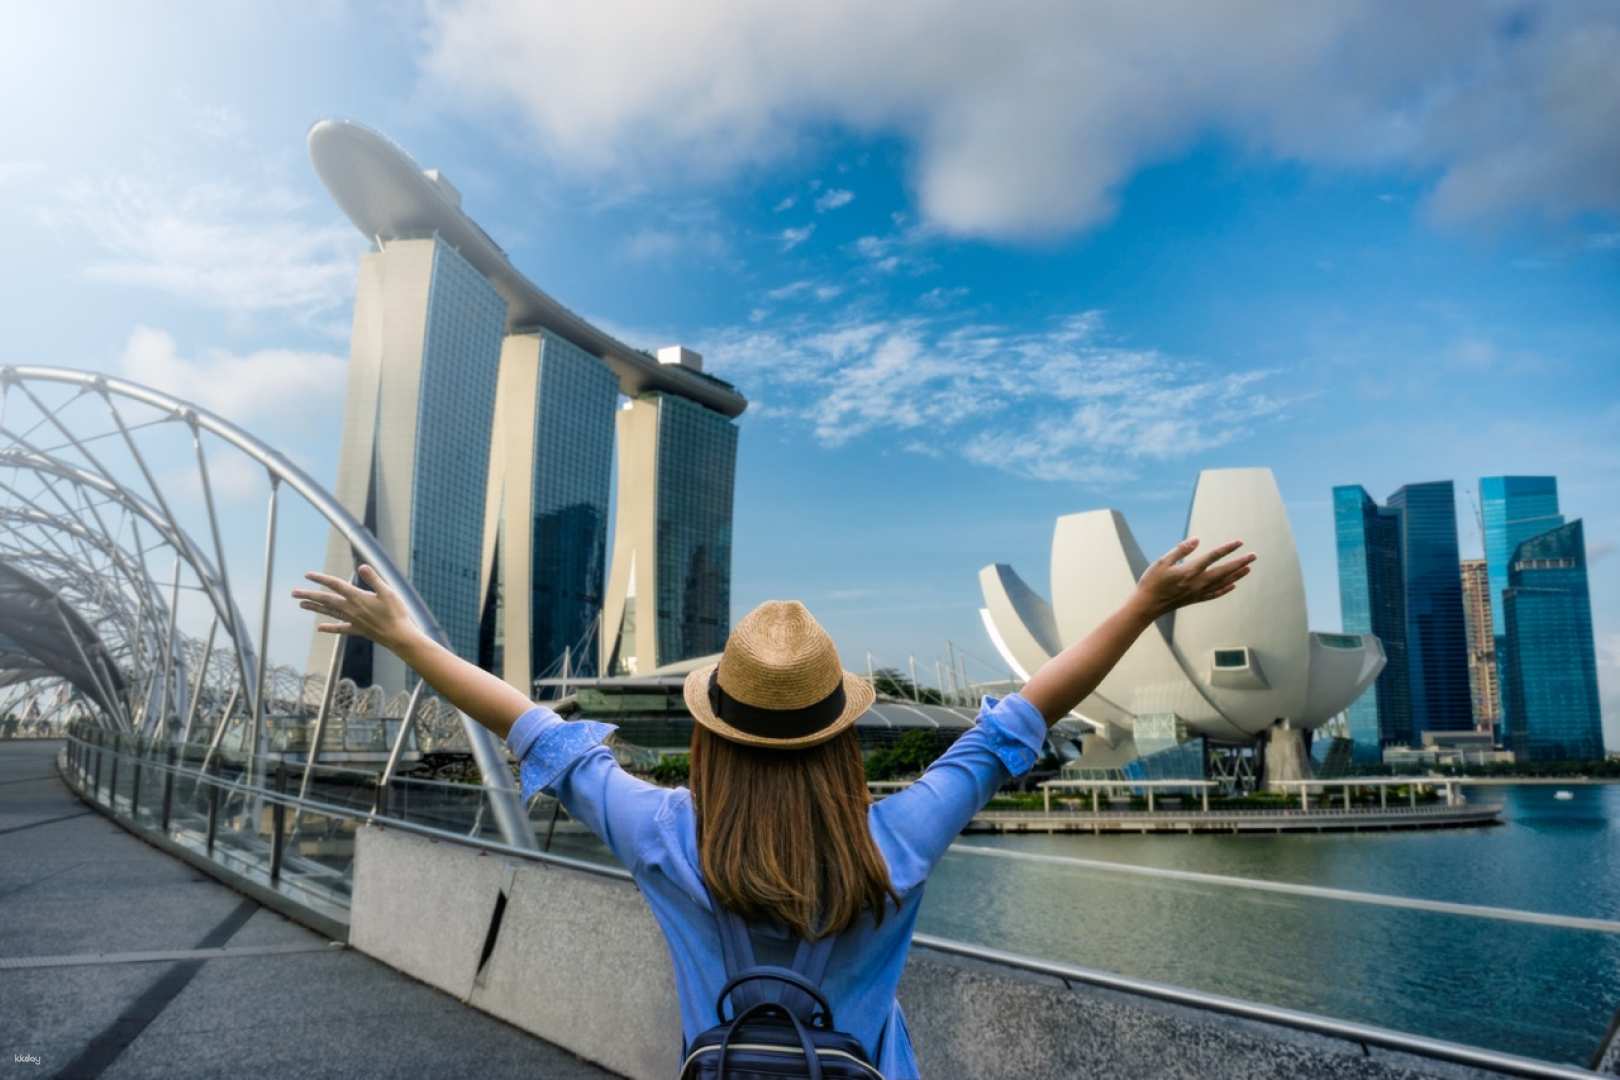 Singapore Tourist Pass PLUS